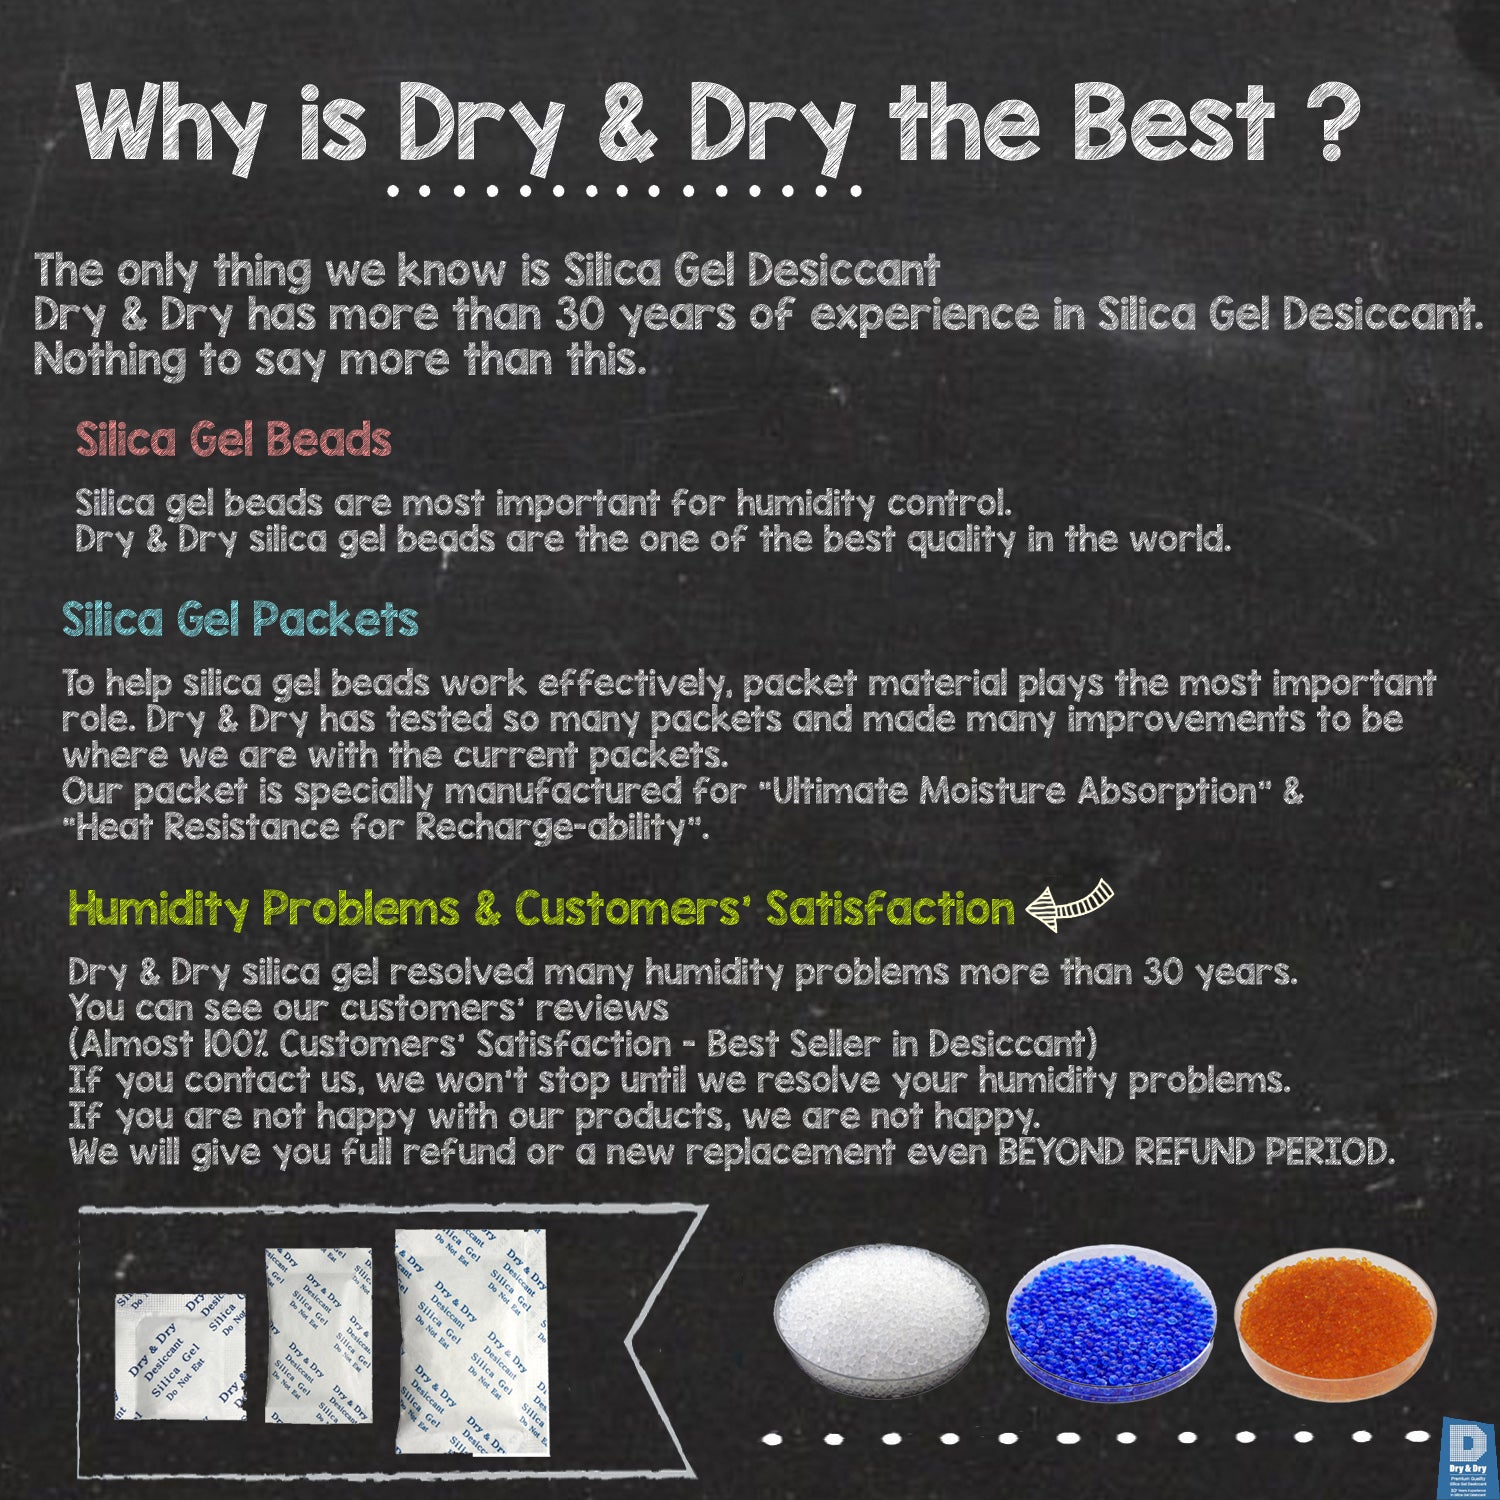 1 Quart(2 LBS) "Dry & Dry" Premium Orange Indicating Silica Gel Desiccant Bead